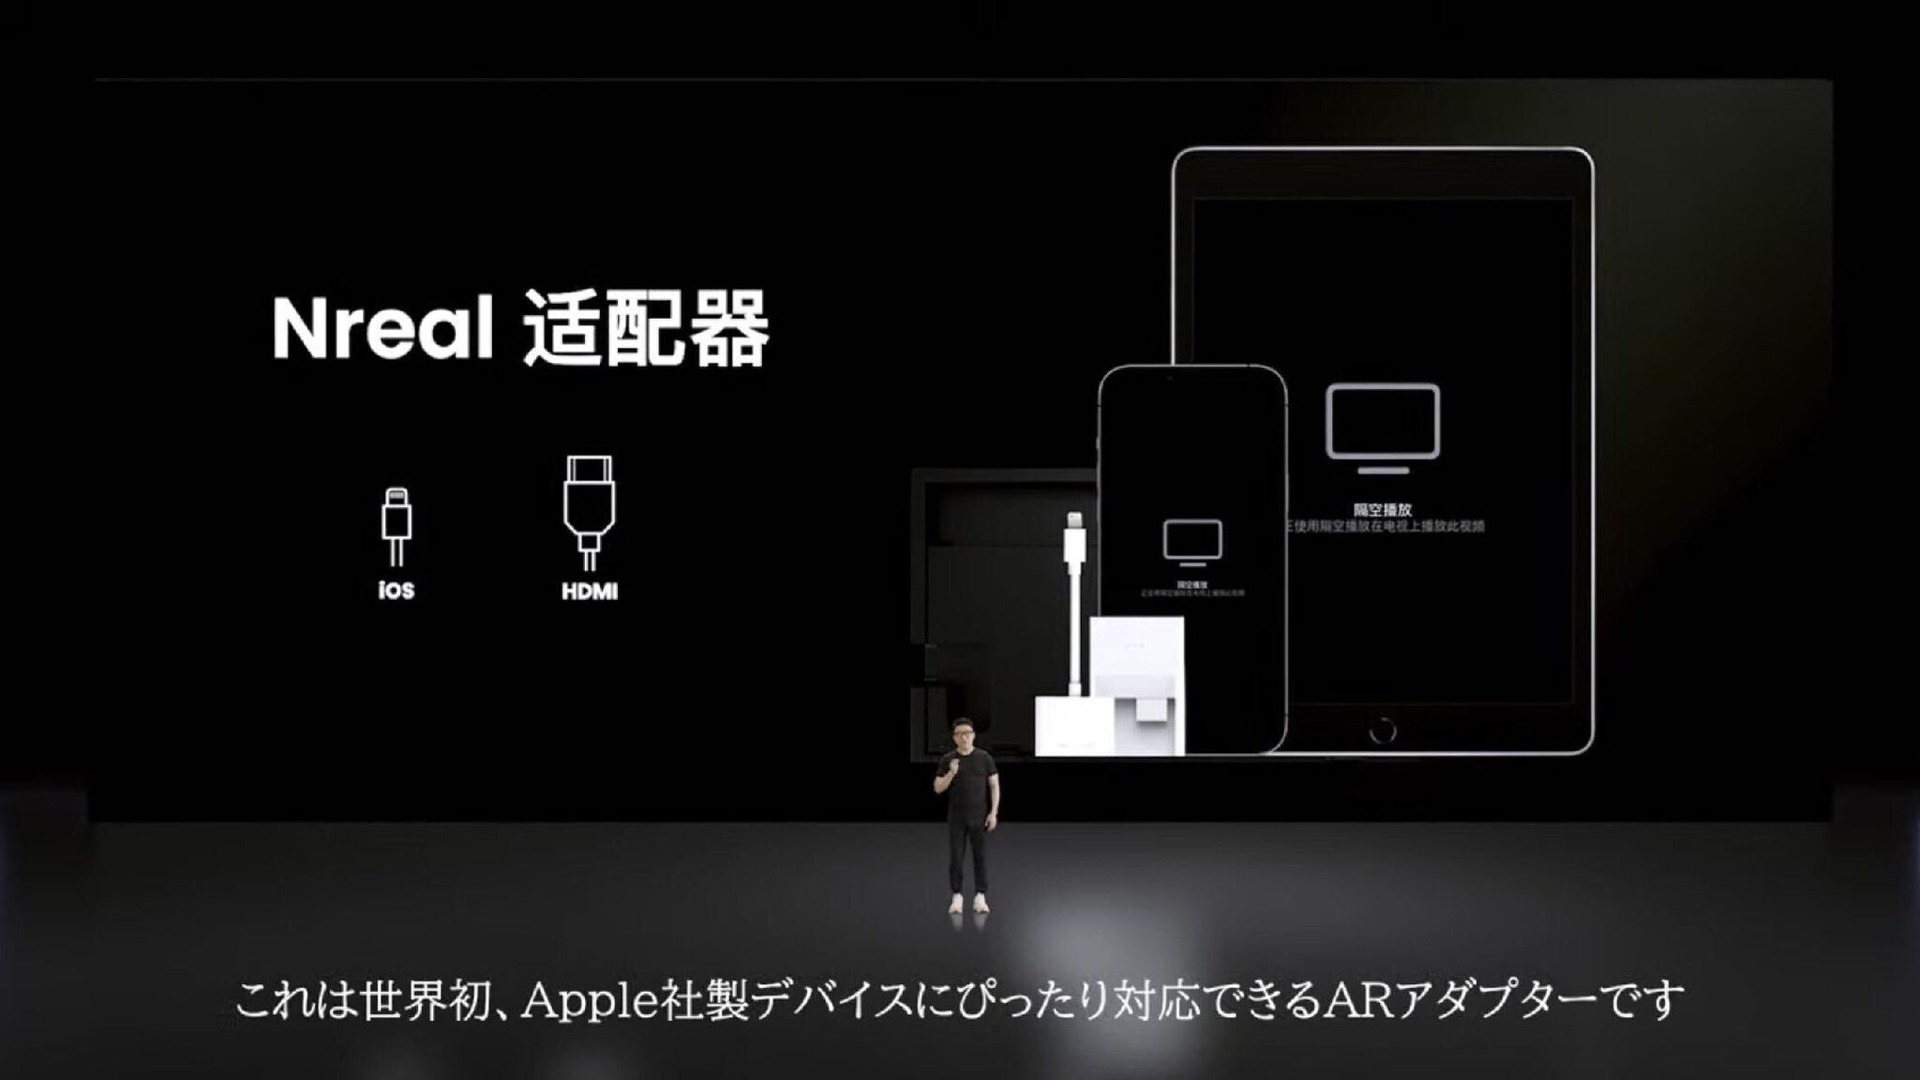 ARメガネNreal に純正 iOS / HDMIアダプタ。iPhoneやニンテンドー